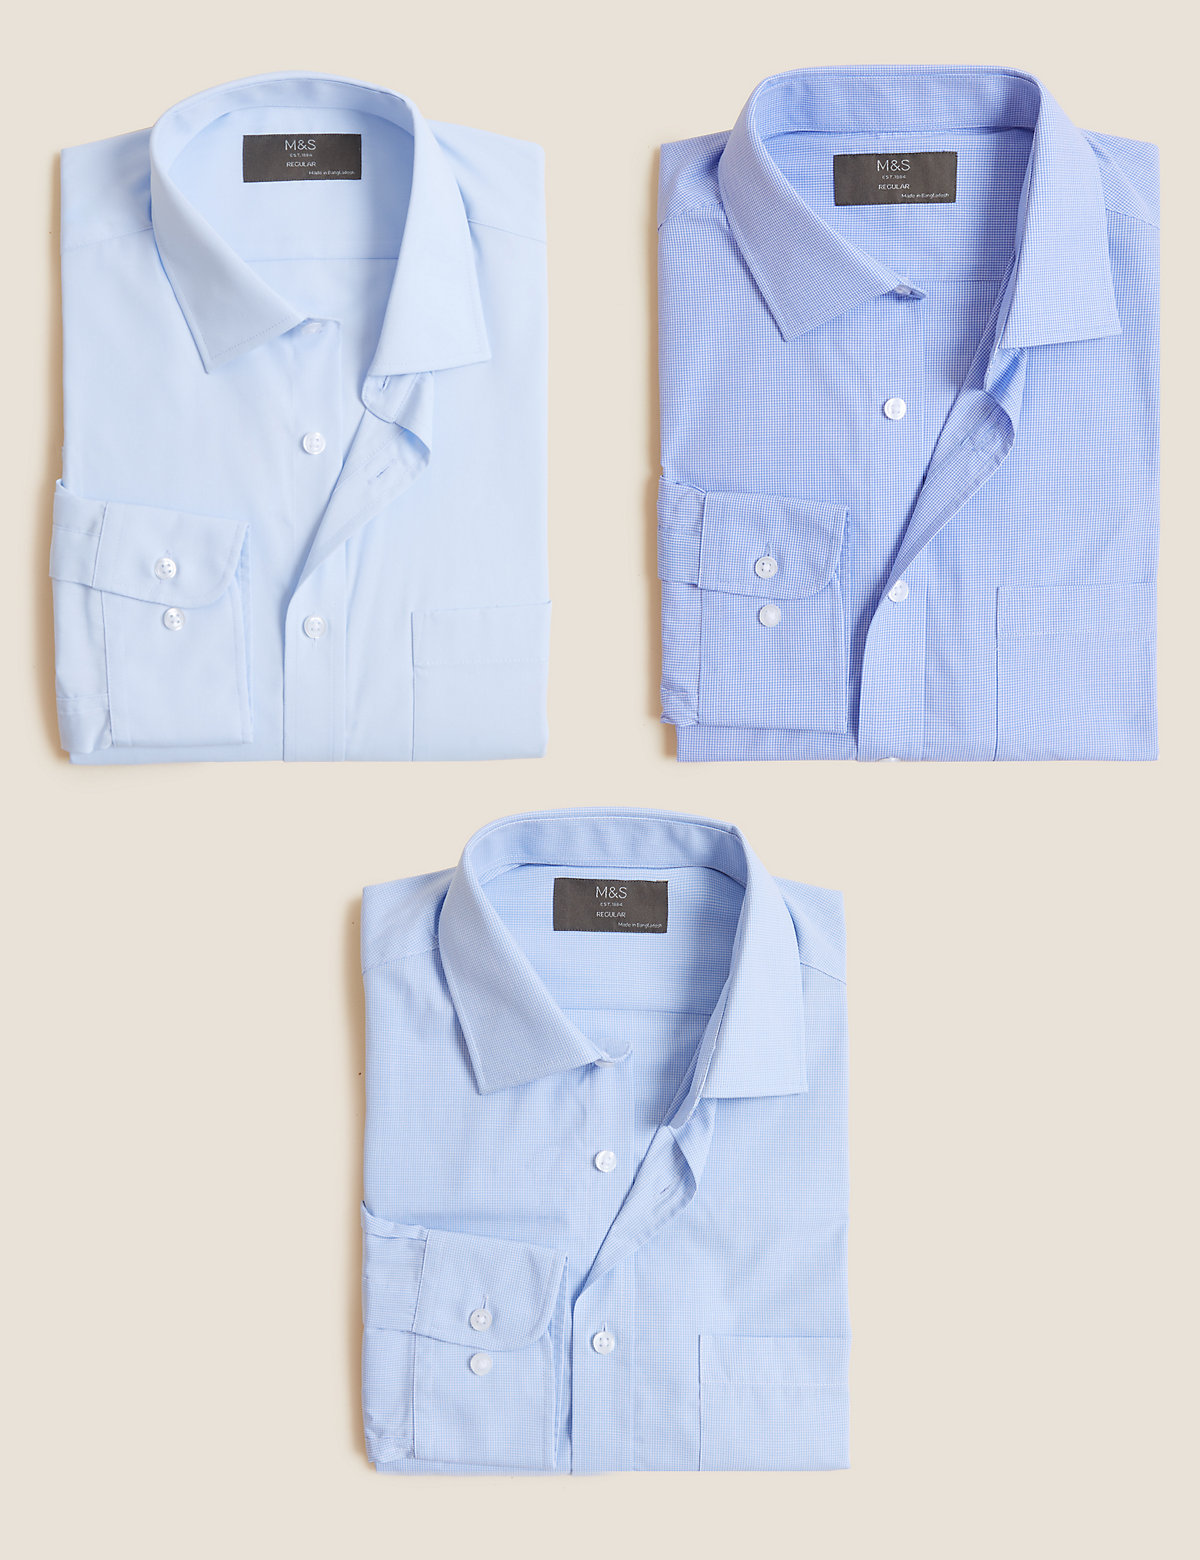 Комплект классических мужских рубашек с отделкой Easy Iron (3 шт)(Комплект классических мужских рубашек с отделкой Easy Iron (3 шт))